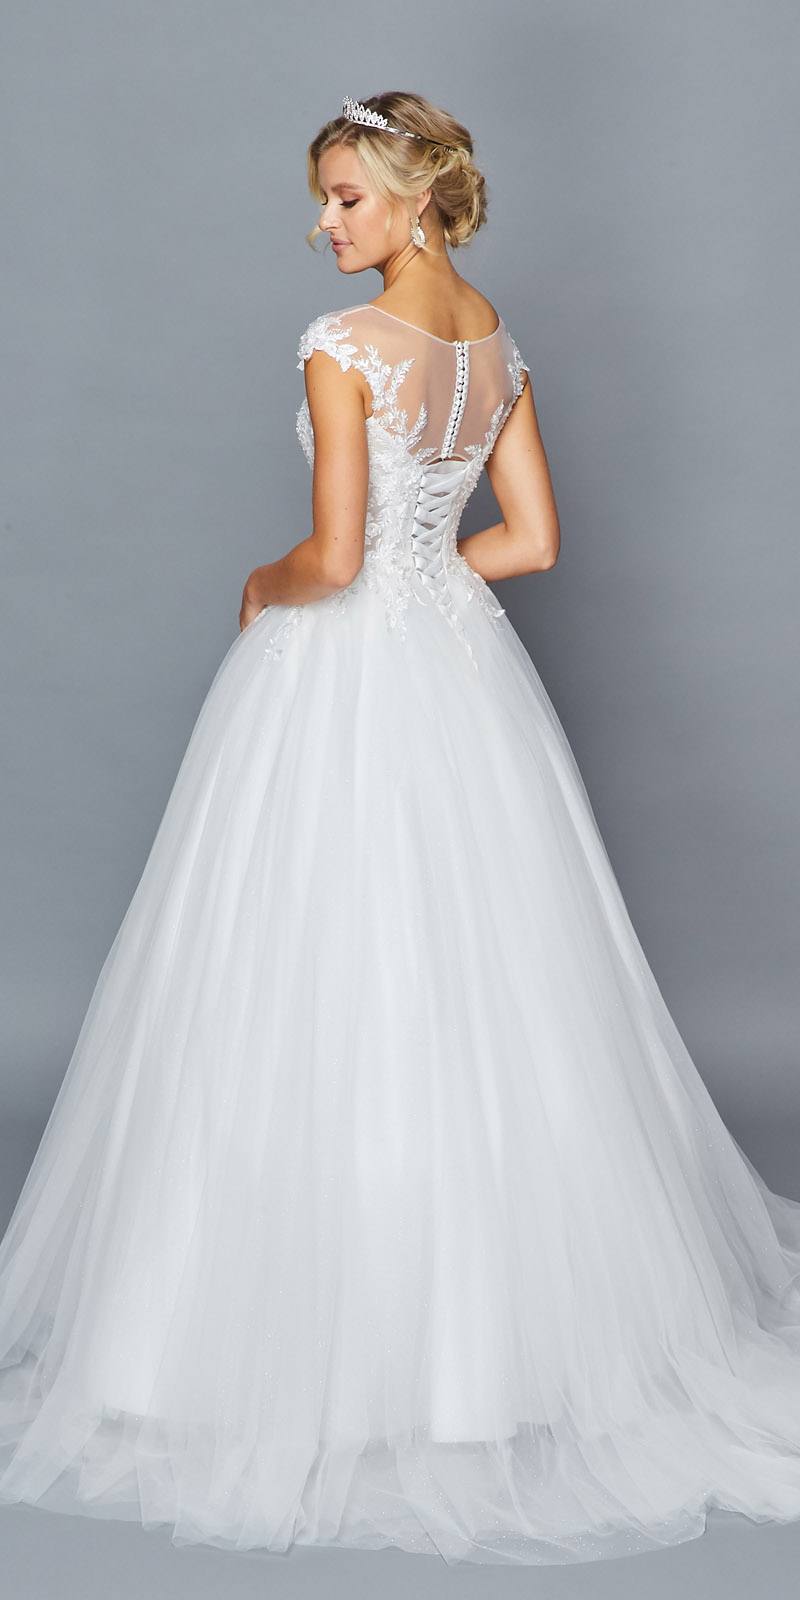 DeKlaire Bridal 425 Illusion Boat Neckline Cap Sleeve A-Line Court Train Wedding Dress Lace Sequins Applique.